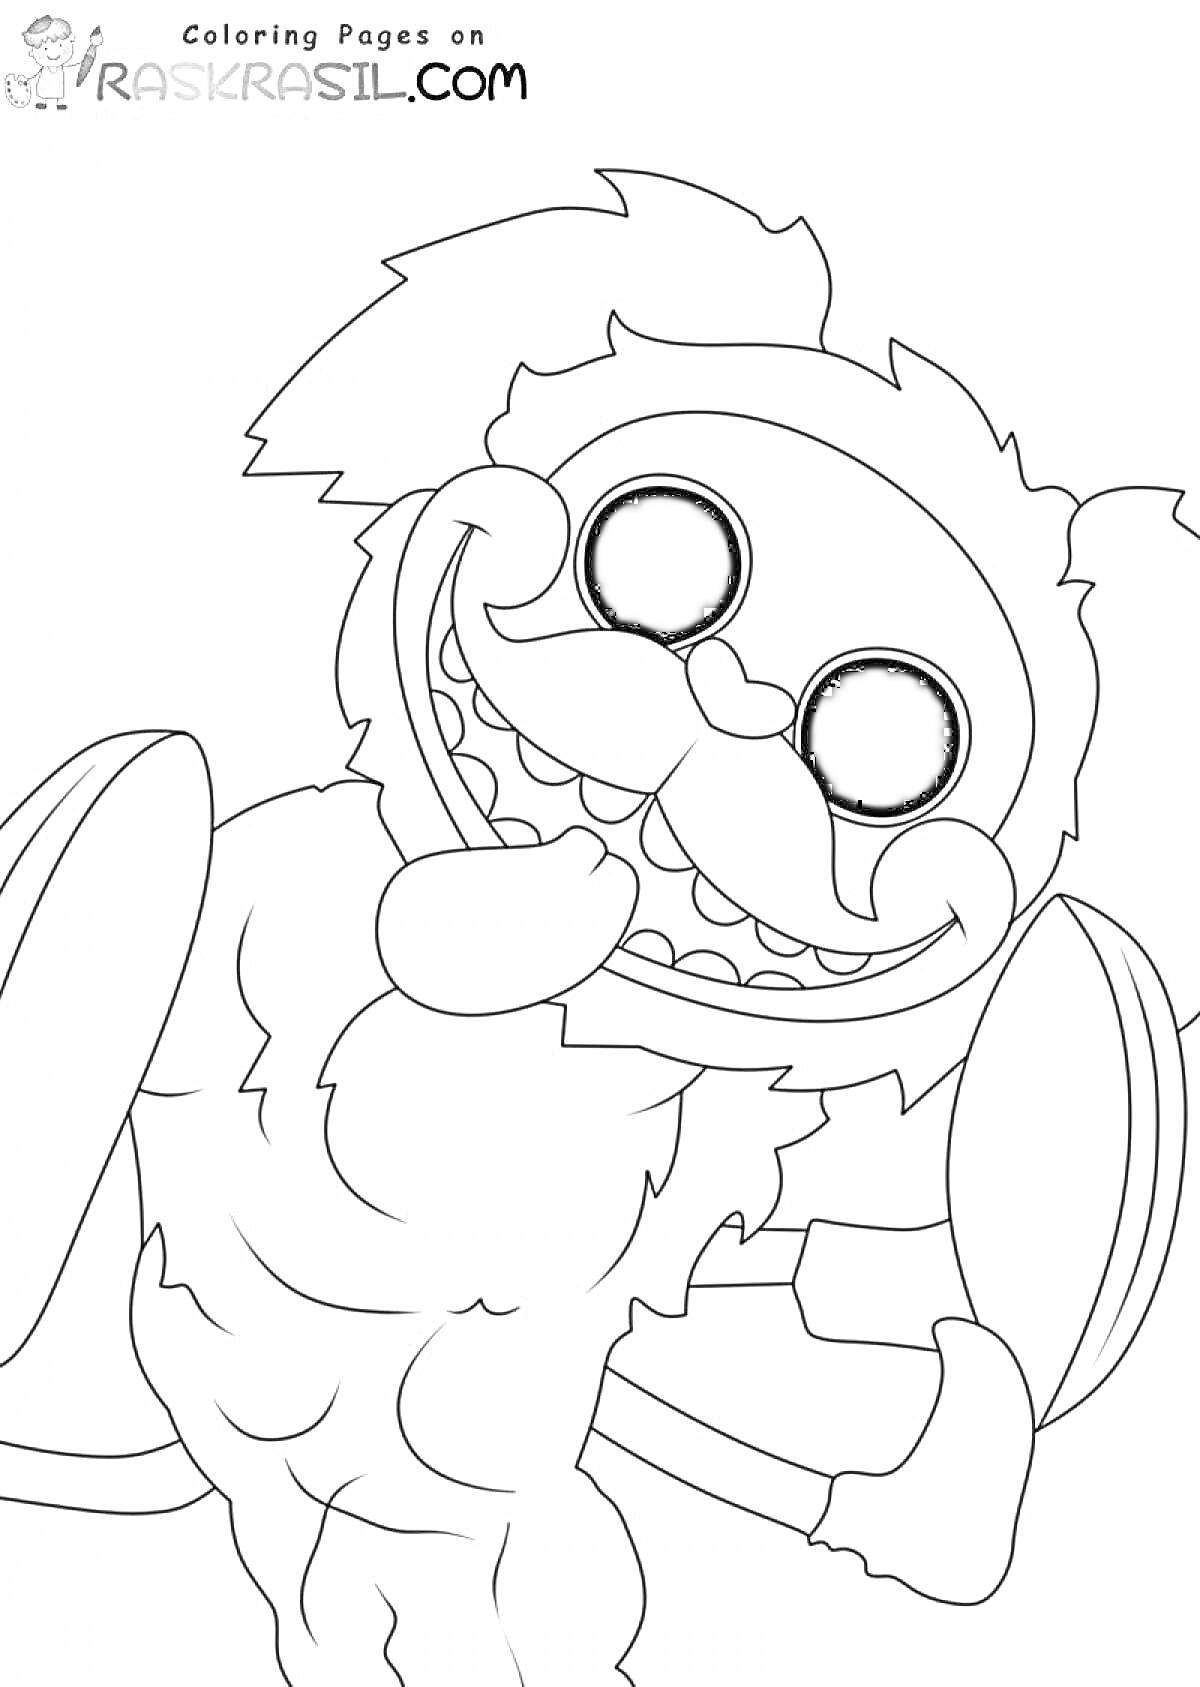 Раскраска Мопс в костюме гусеницы с большими глазами и усами